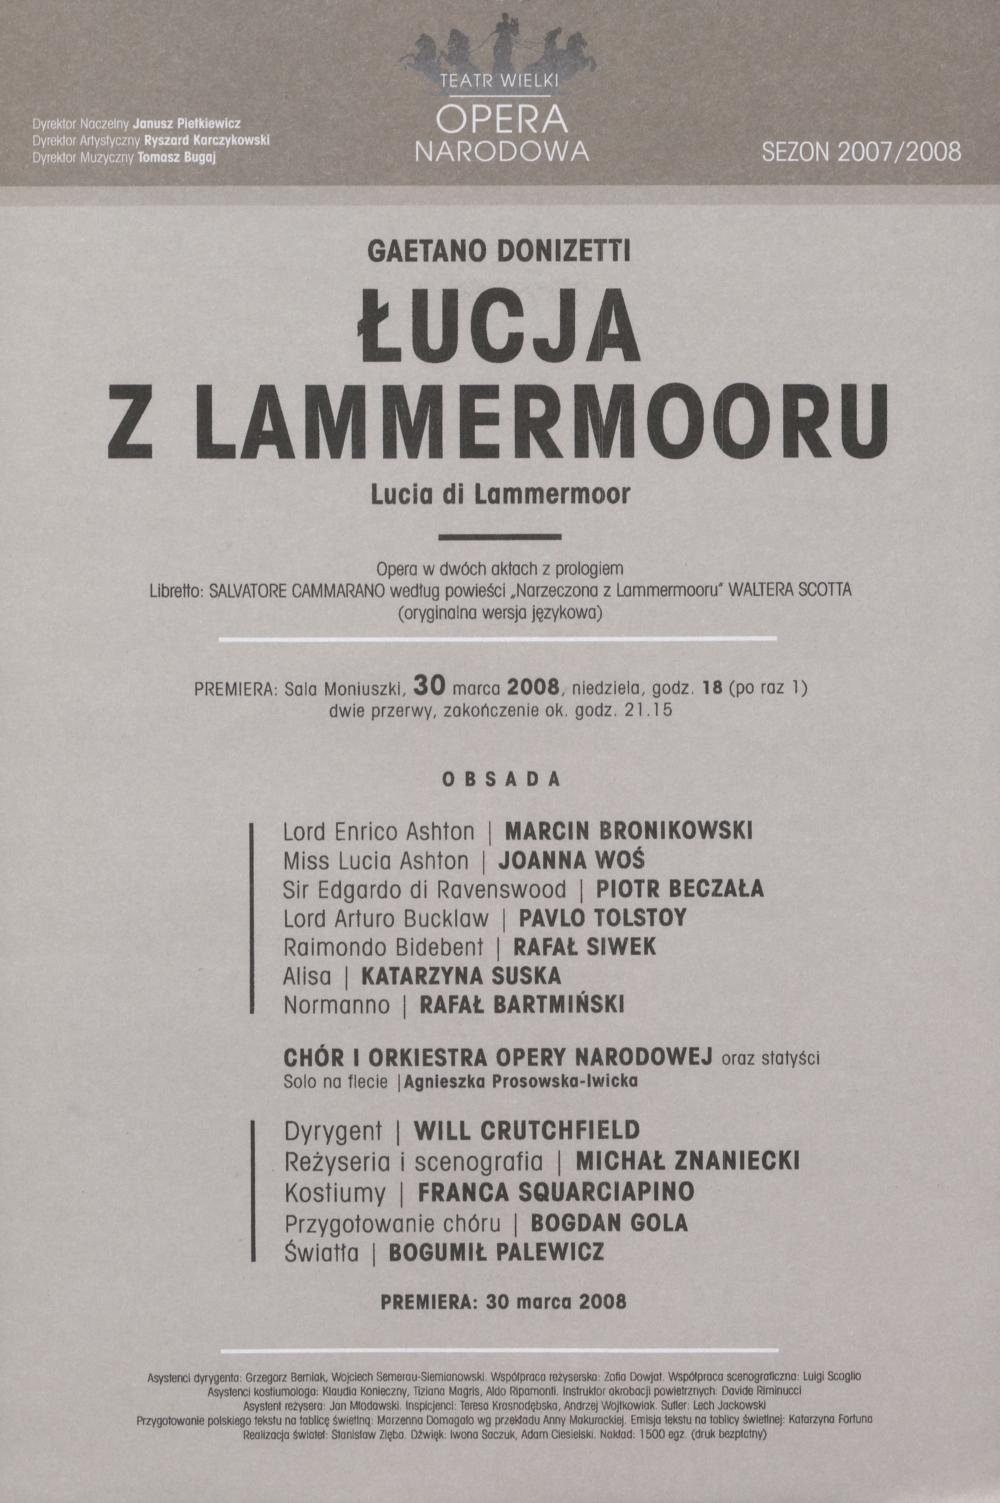 Wkładka obsadowa - „Łucja z Lammermooru” Gaetano Donizetti 30-03-2008